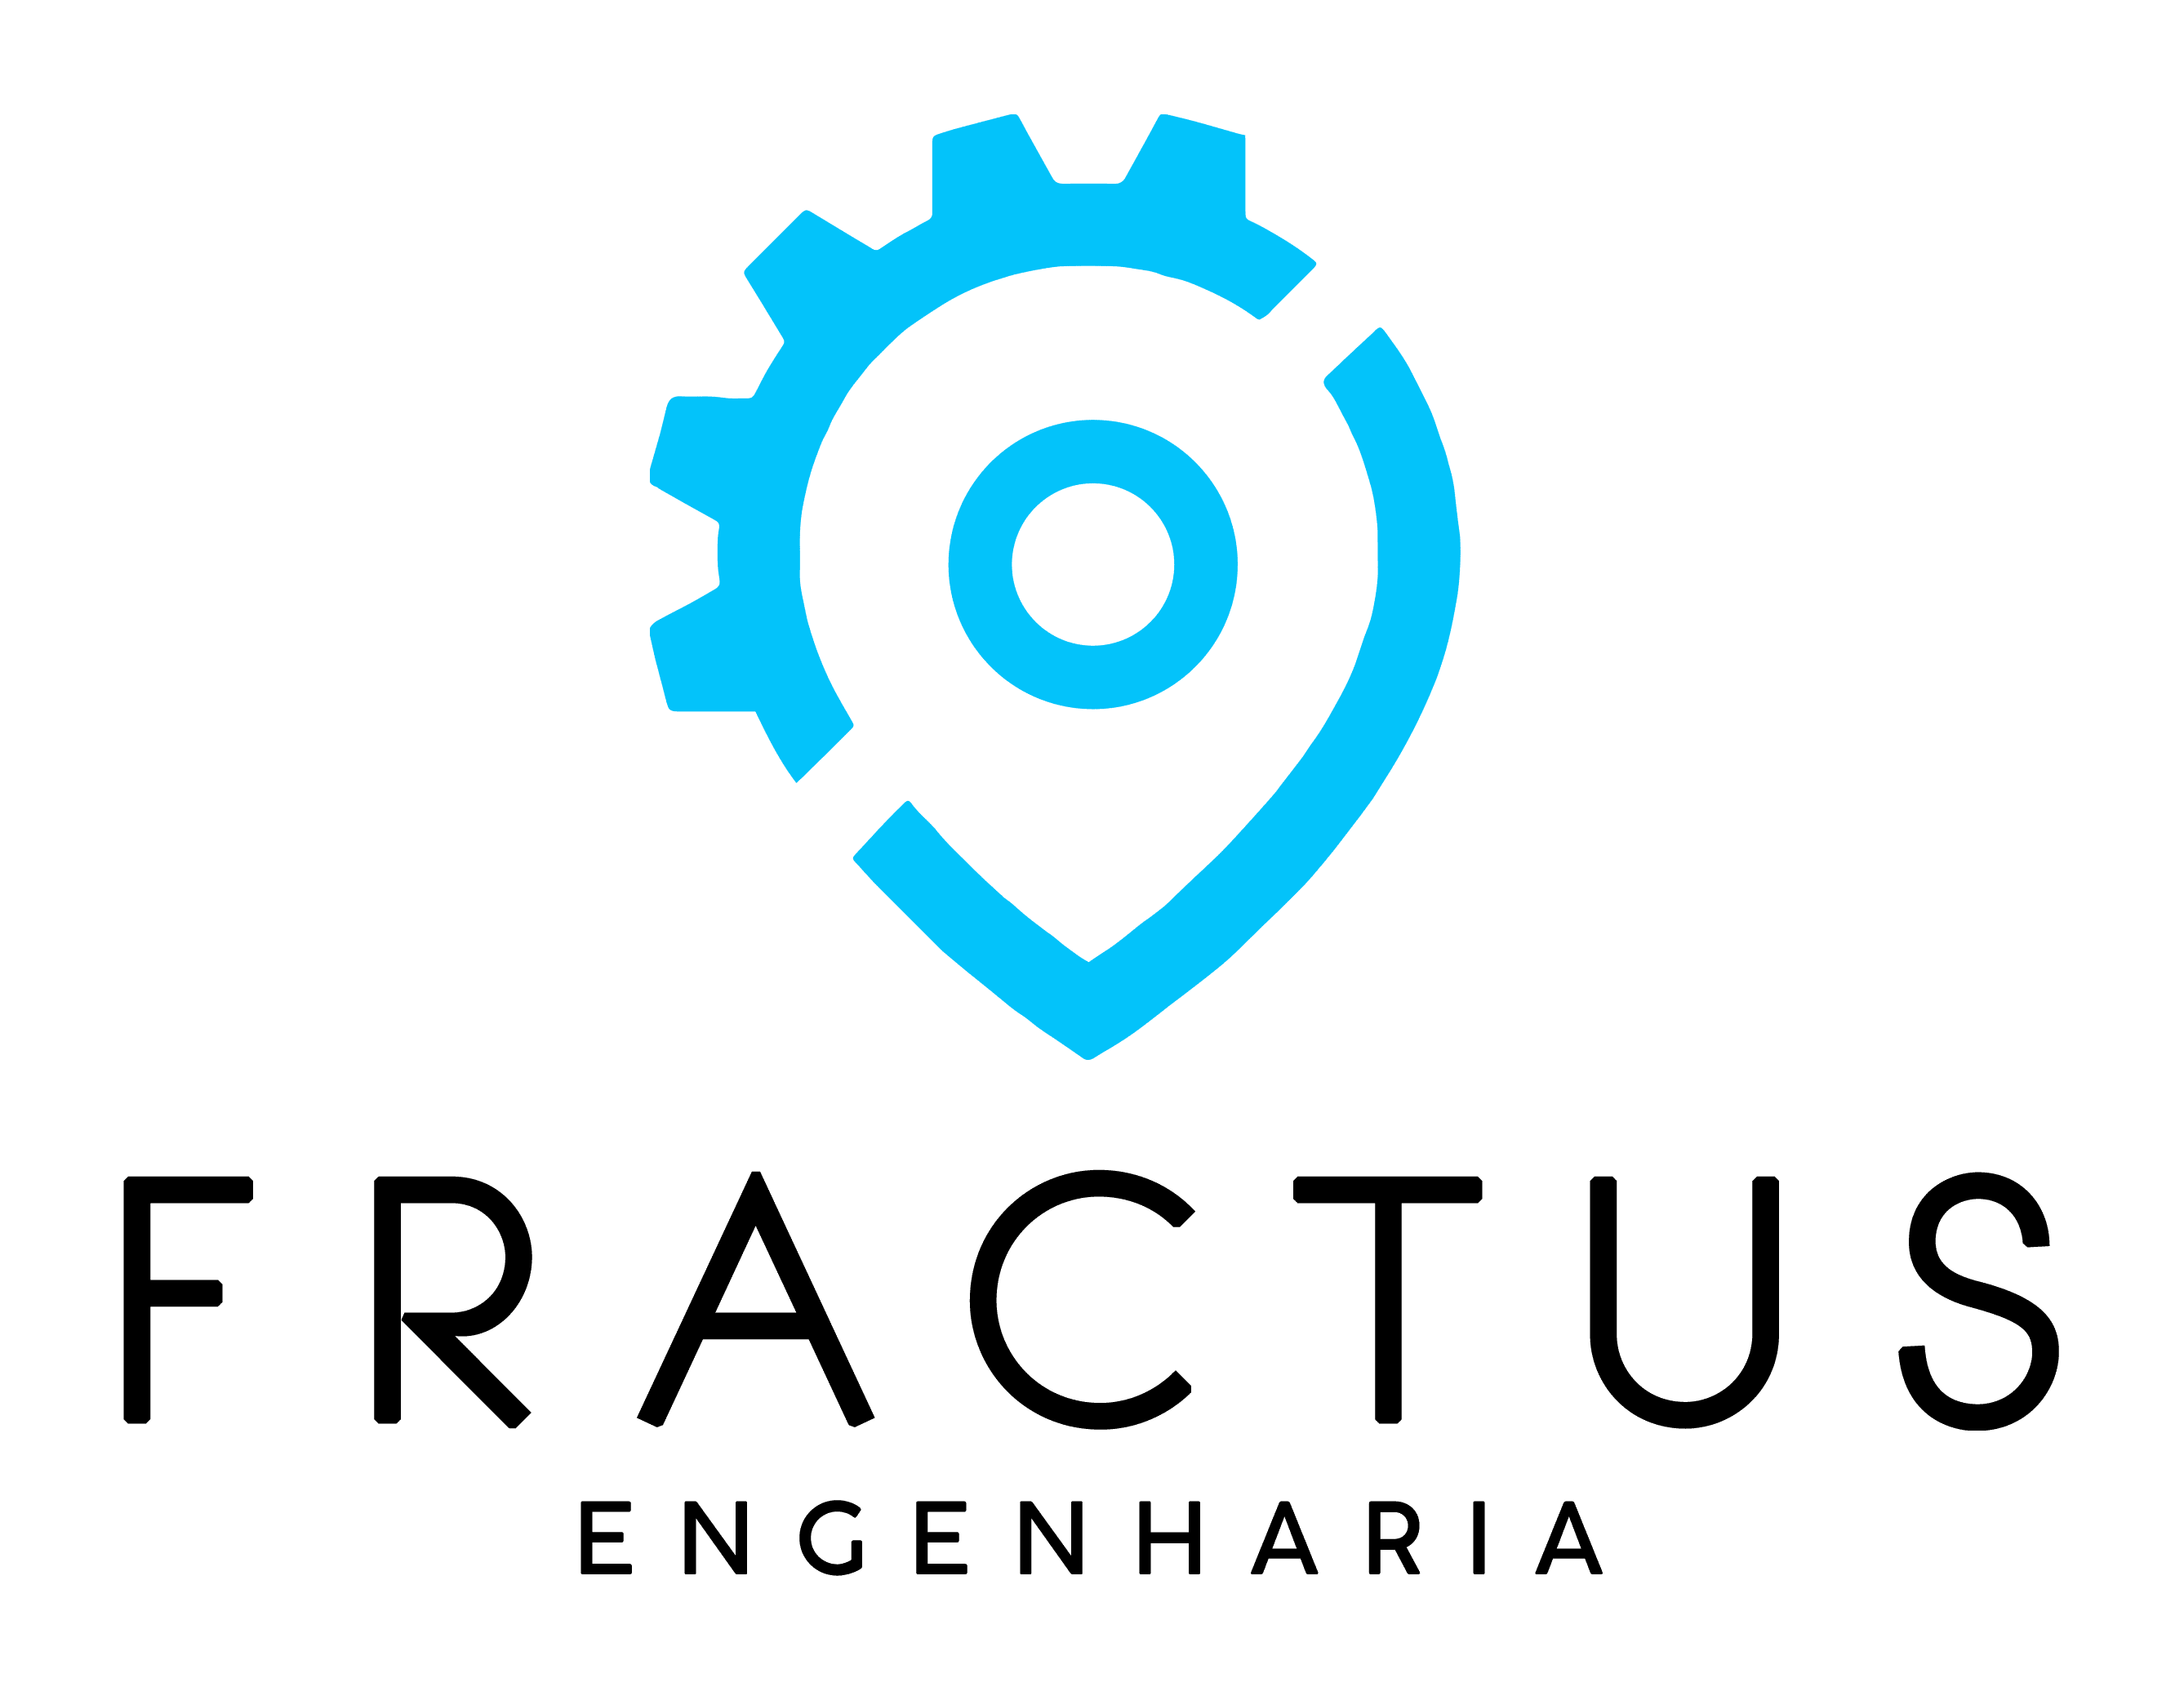 FRACTUS Engenharia